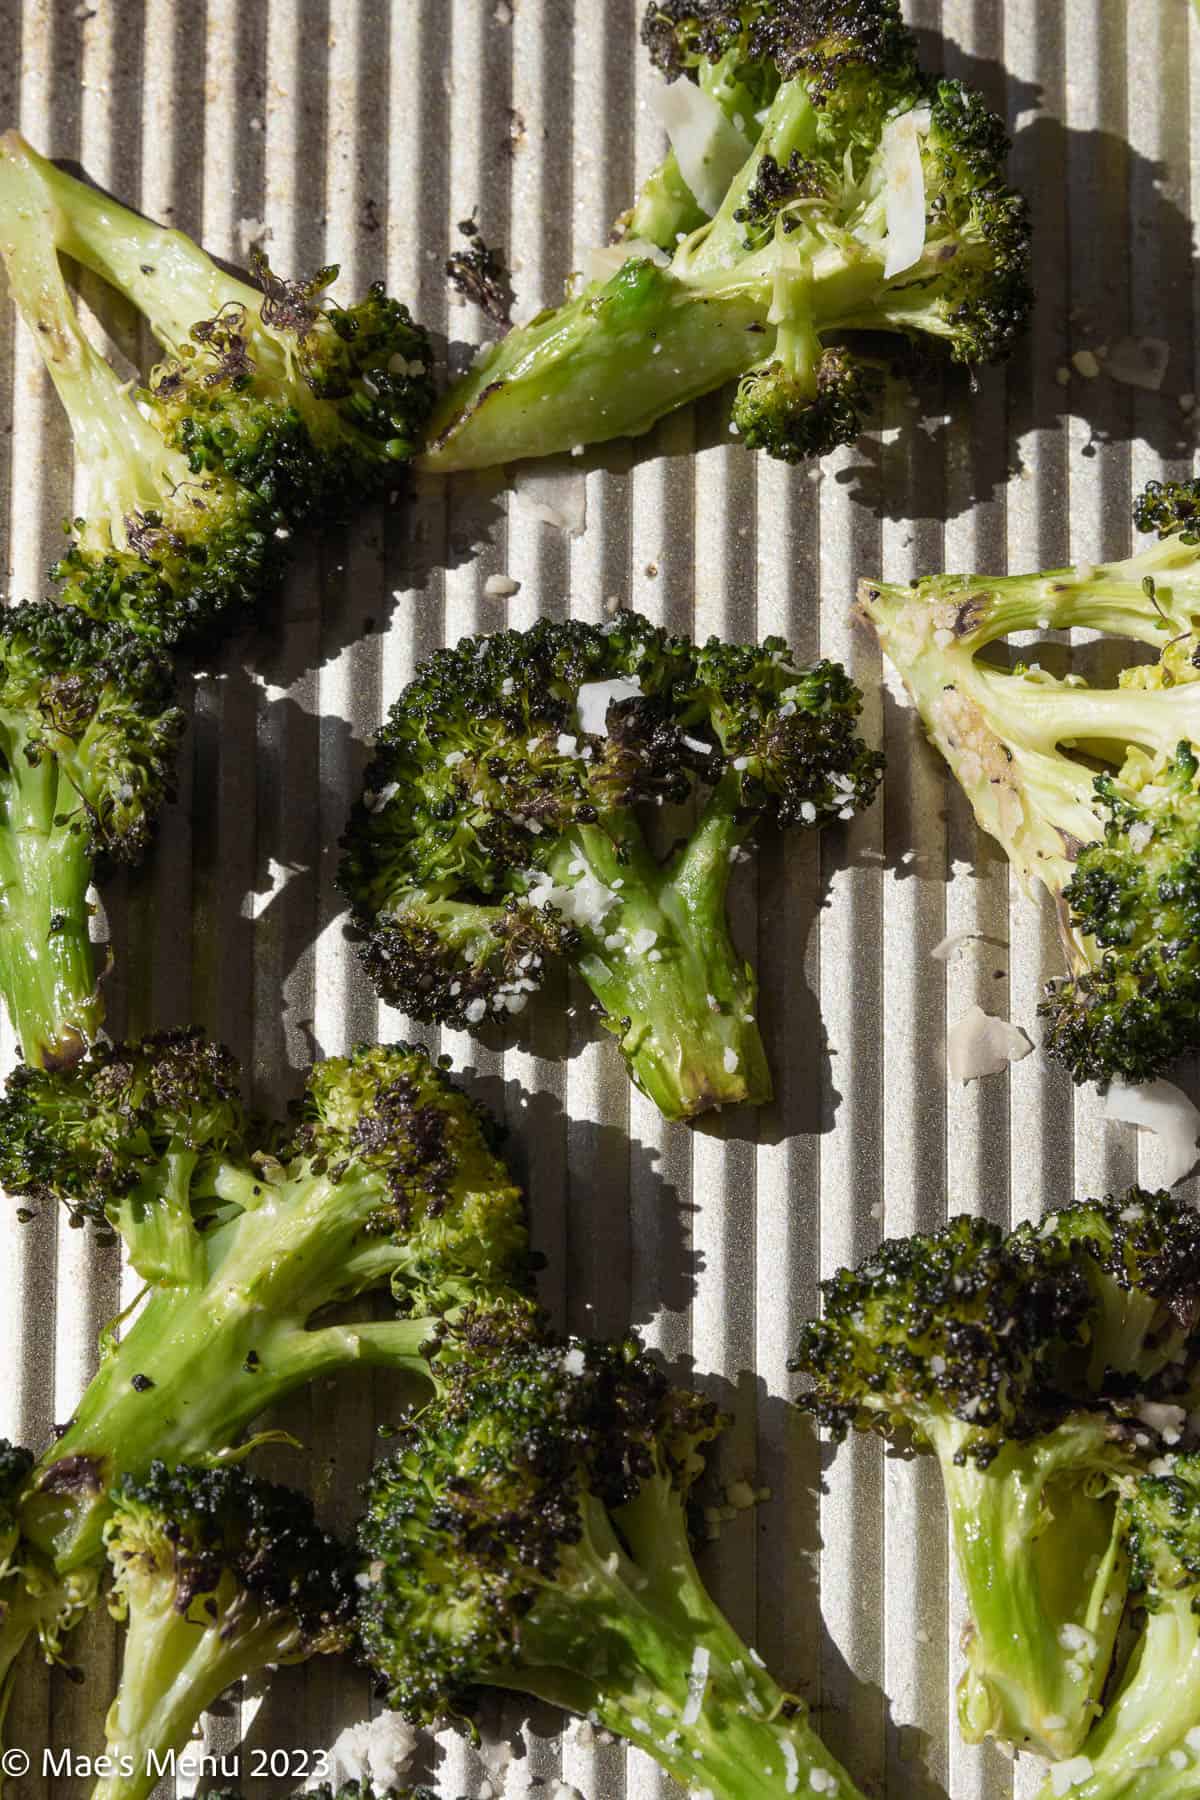 Closeup shot of Seasoned Roasted broccoli on a baking sheet.